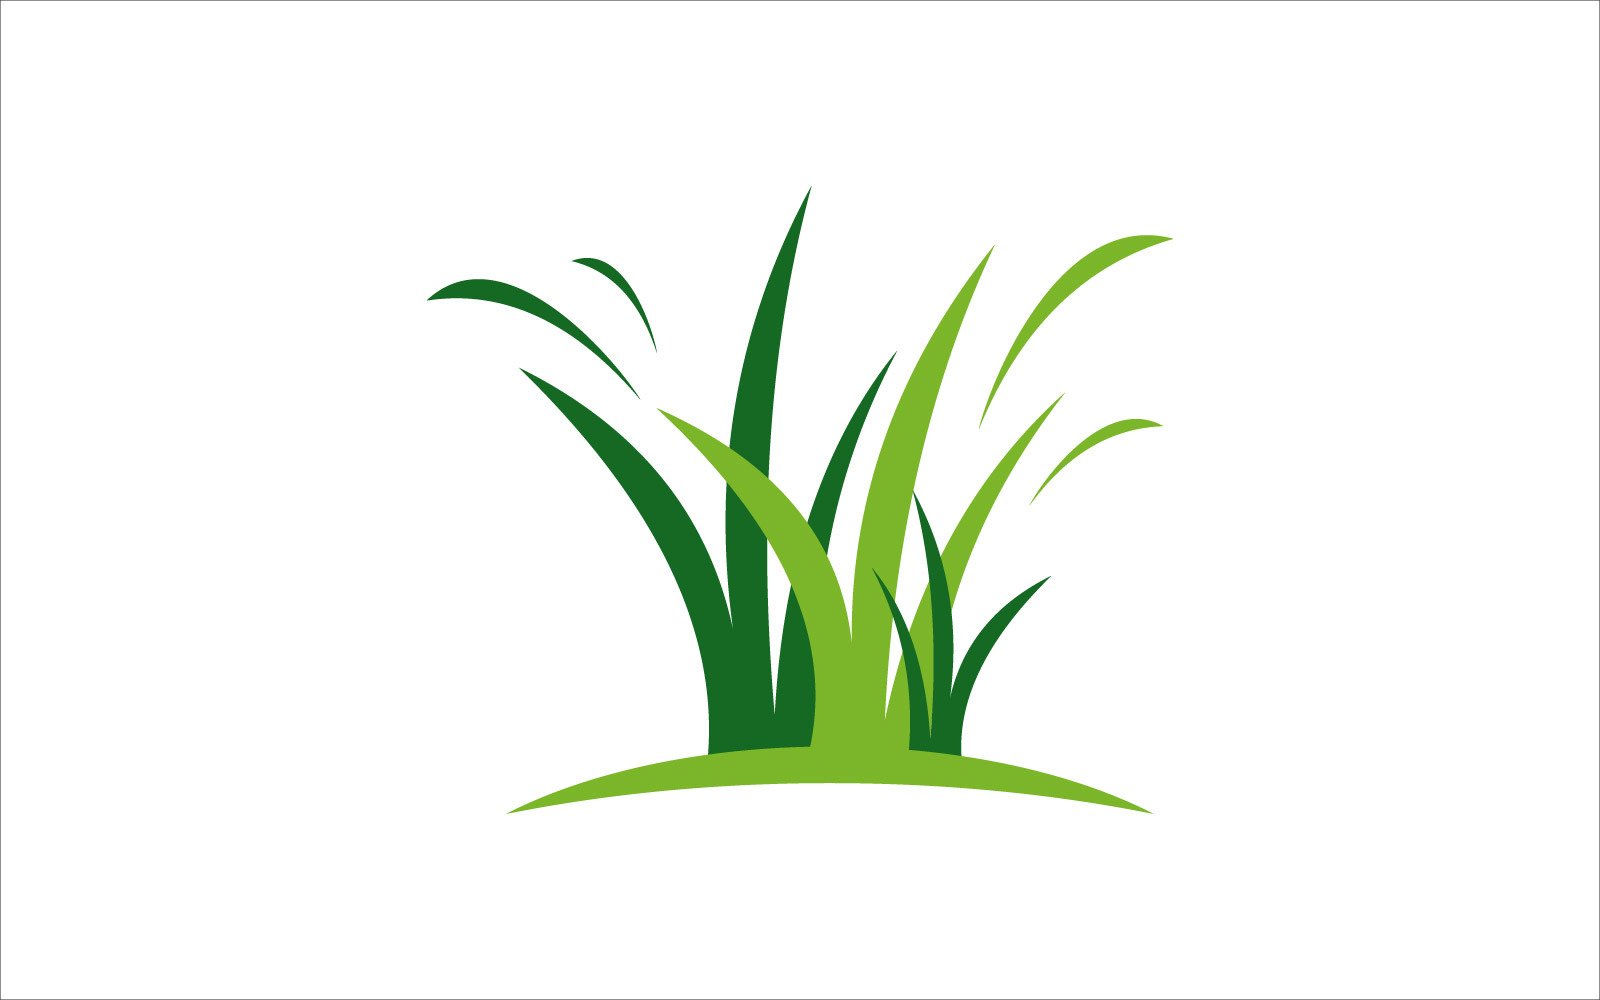 Green grass vector template #203292 - TemplateMonster